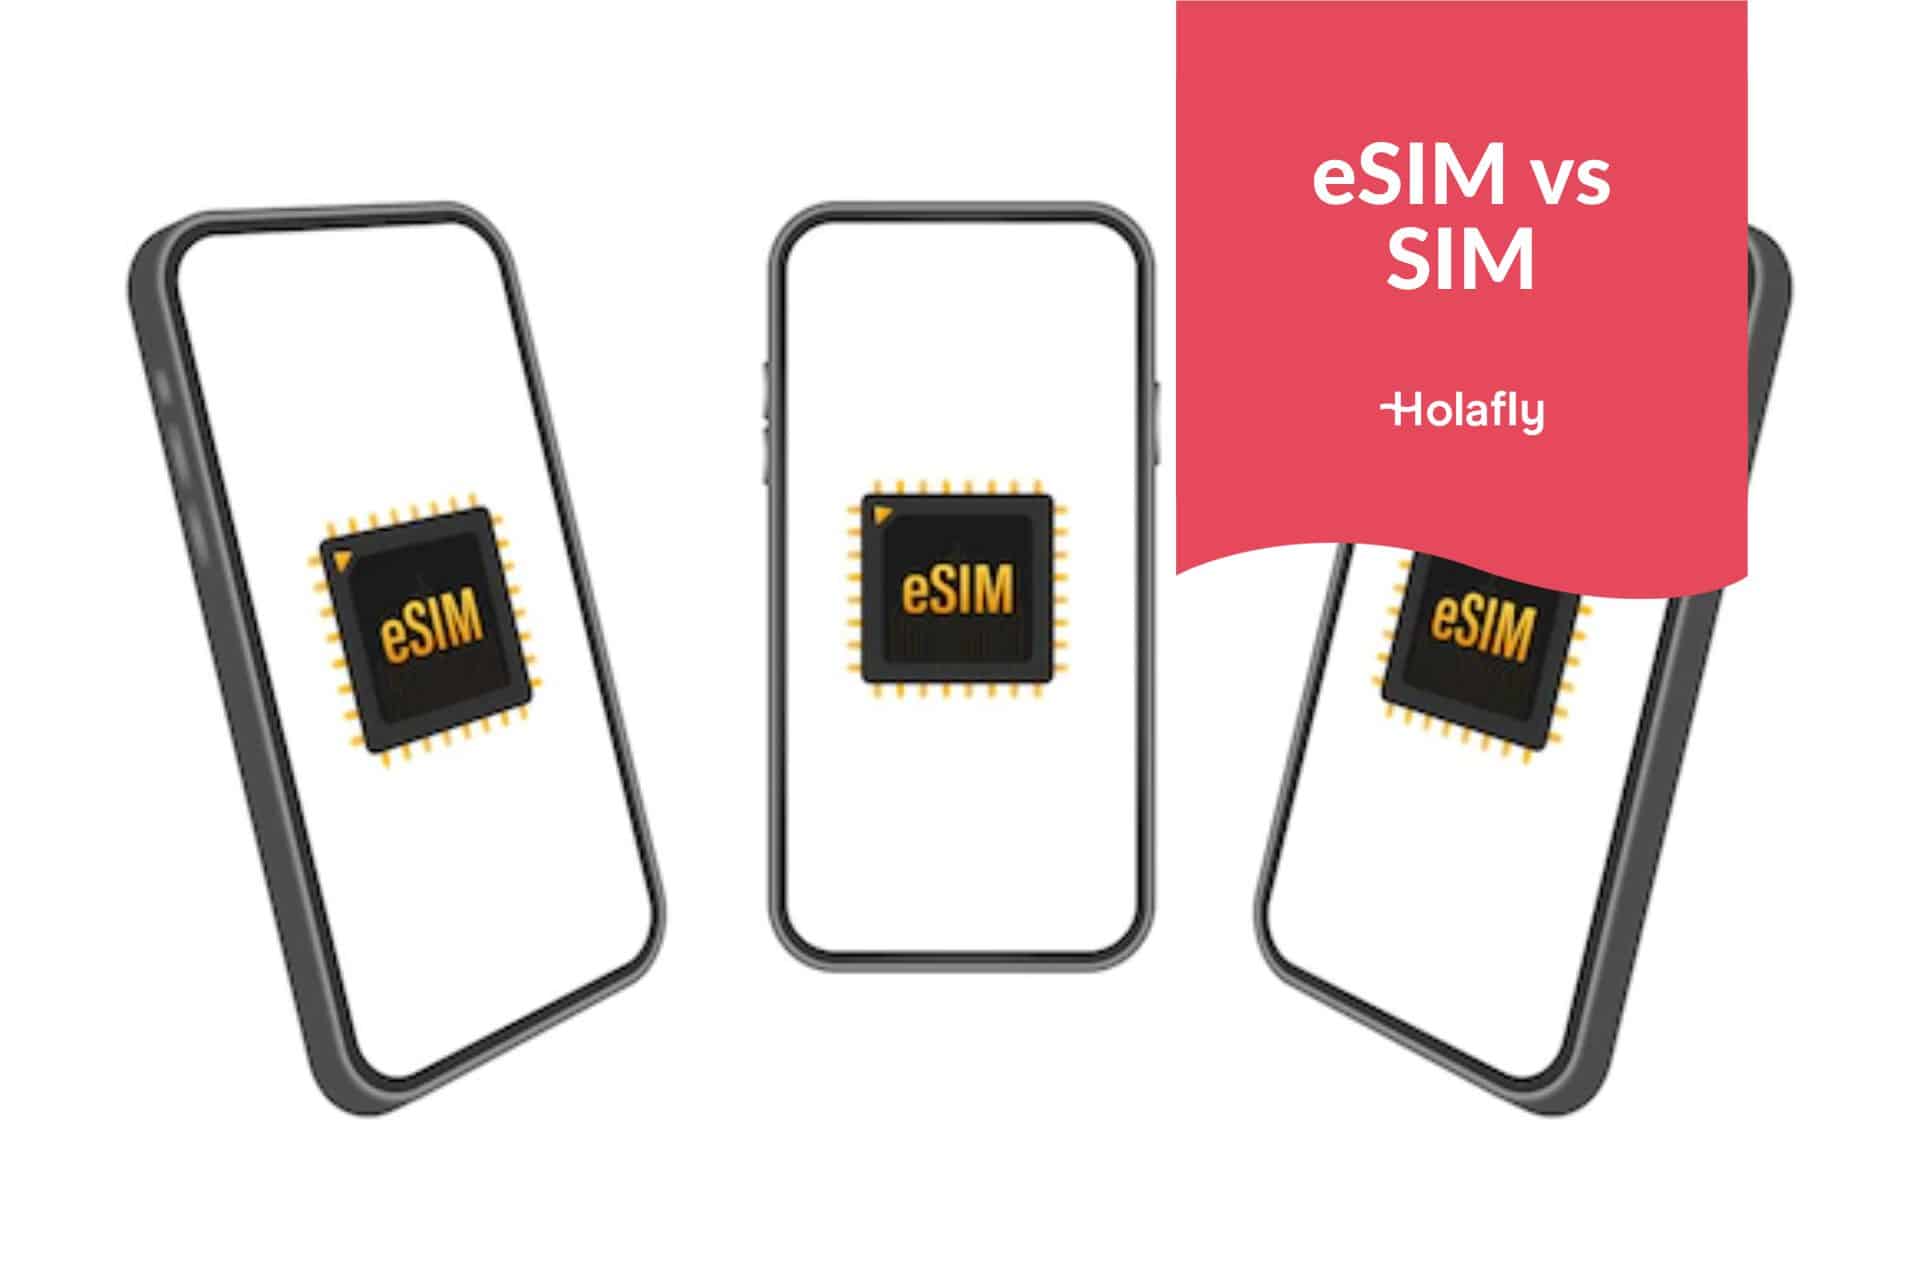 Carte SIM, double SIM, eSIM : quelles sont les différences ?